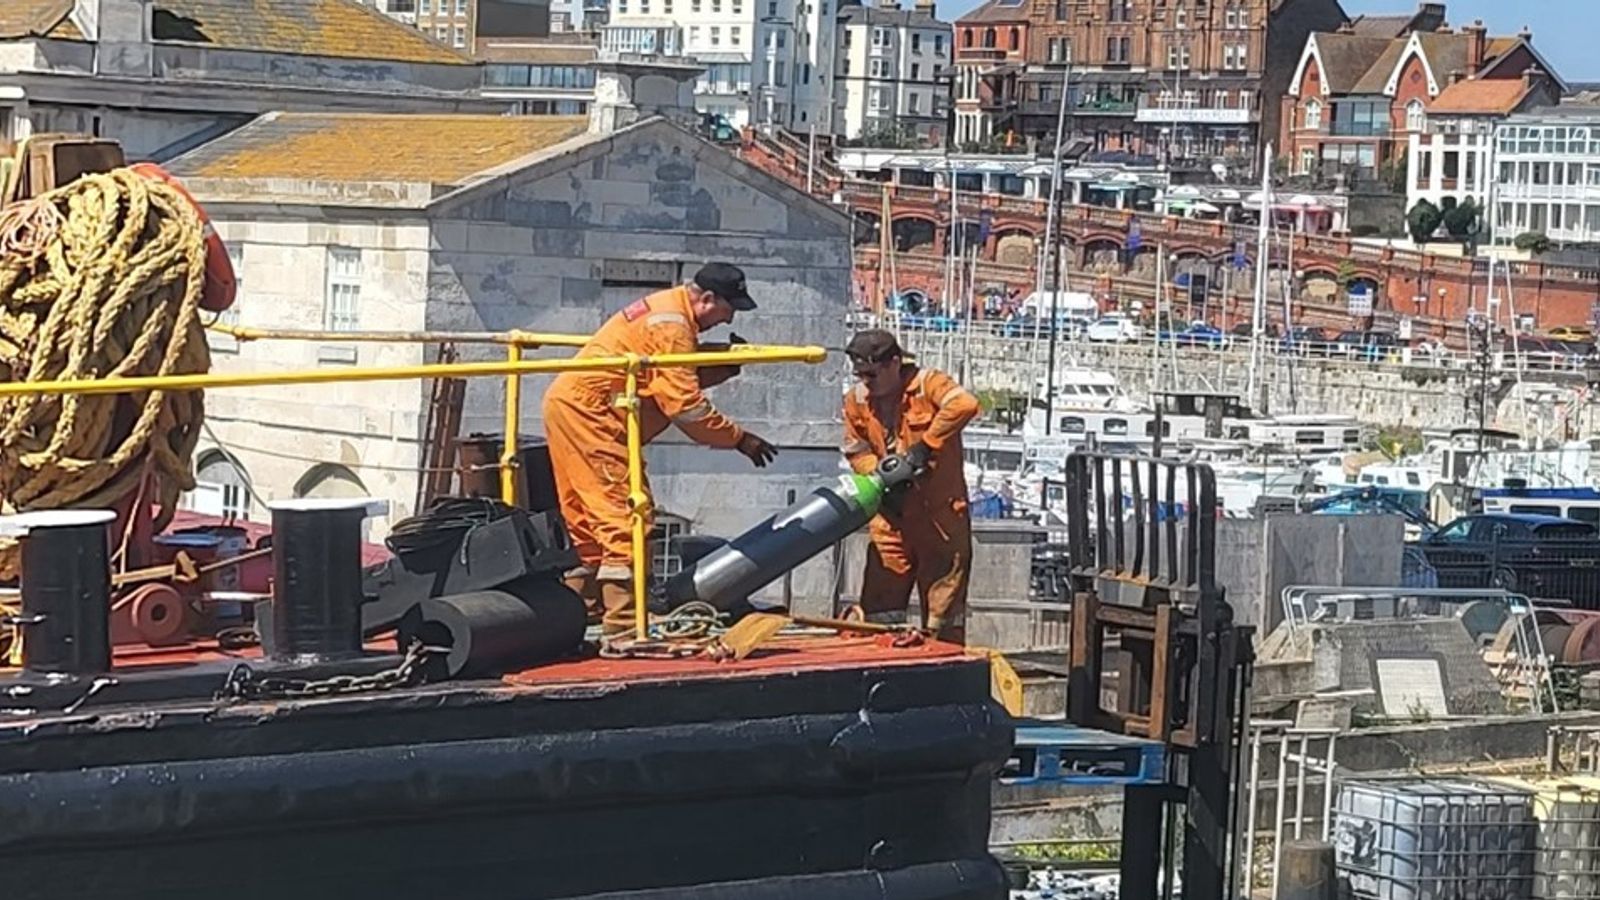 Компанията получи глоба от £100 000, след като работник стои на височина върху палет, повдигнат с мотокар в пристанище Рамсгейт